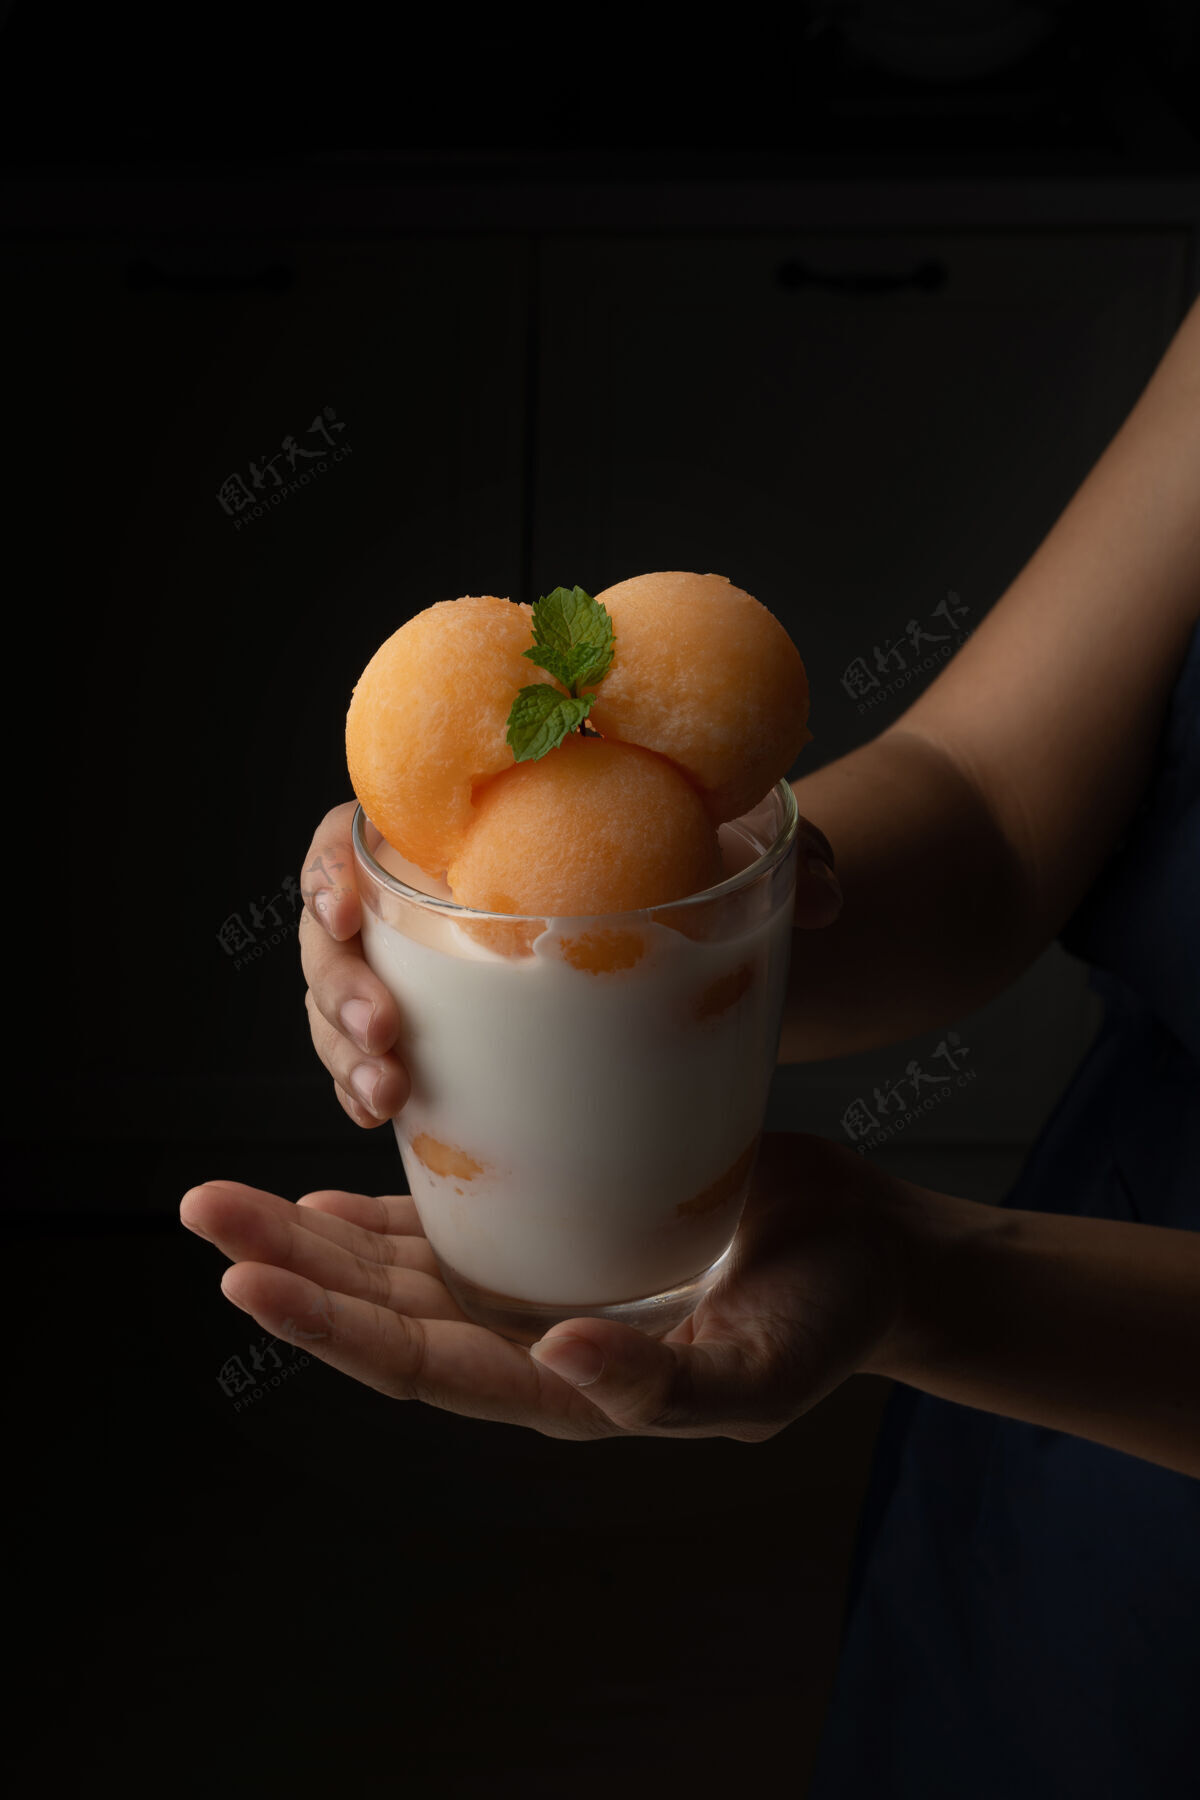 手黄瓜瓜被舀成一个圆球状 像冰淇淋一样放进一个透明的杯子里 上面放着鲜奶 香甜可口好吃吃吧黑色背景上的照片切片甜瓜甜